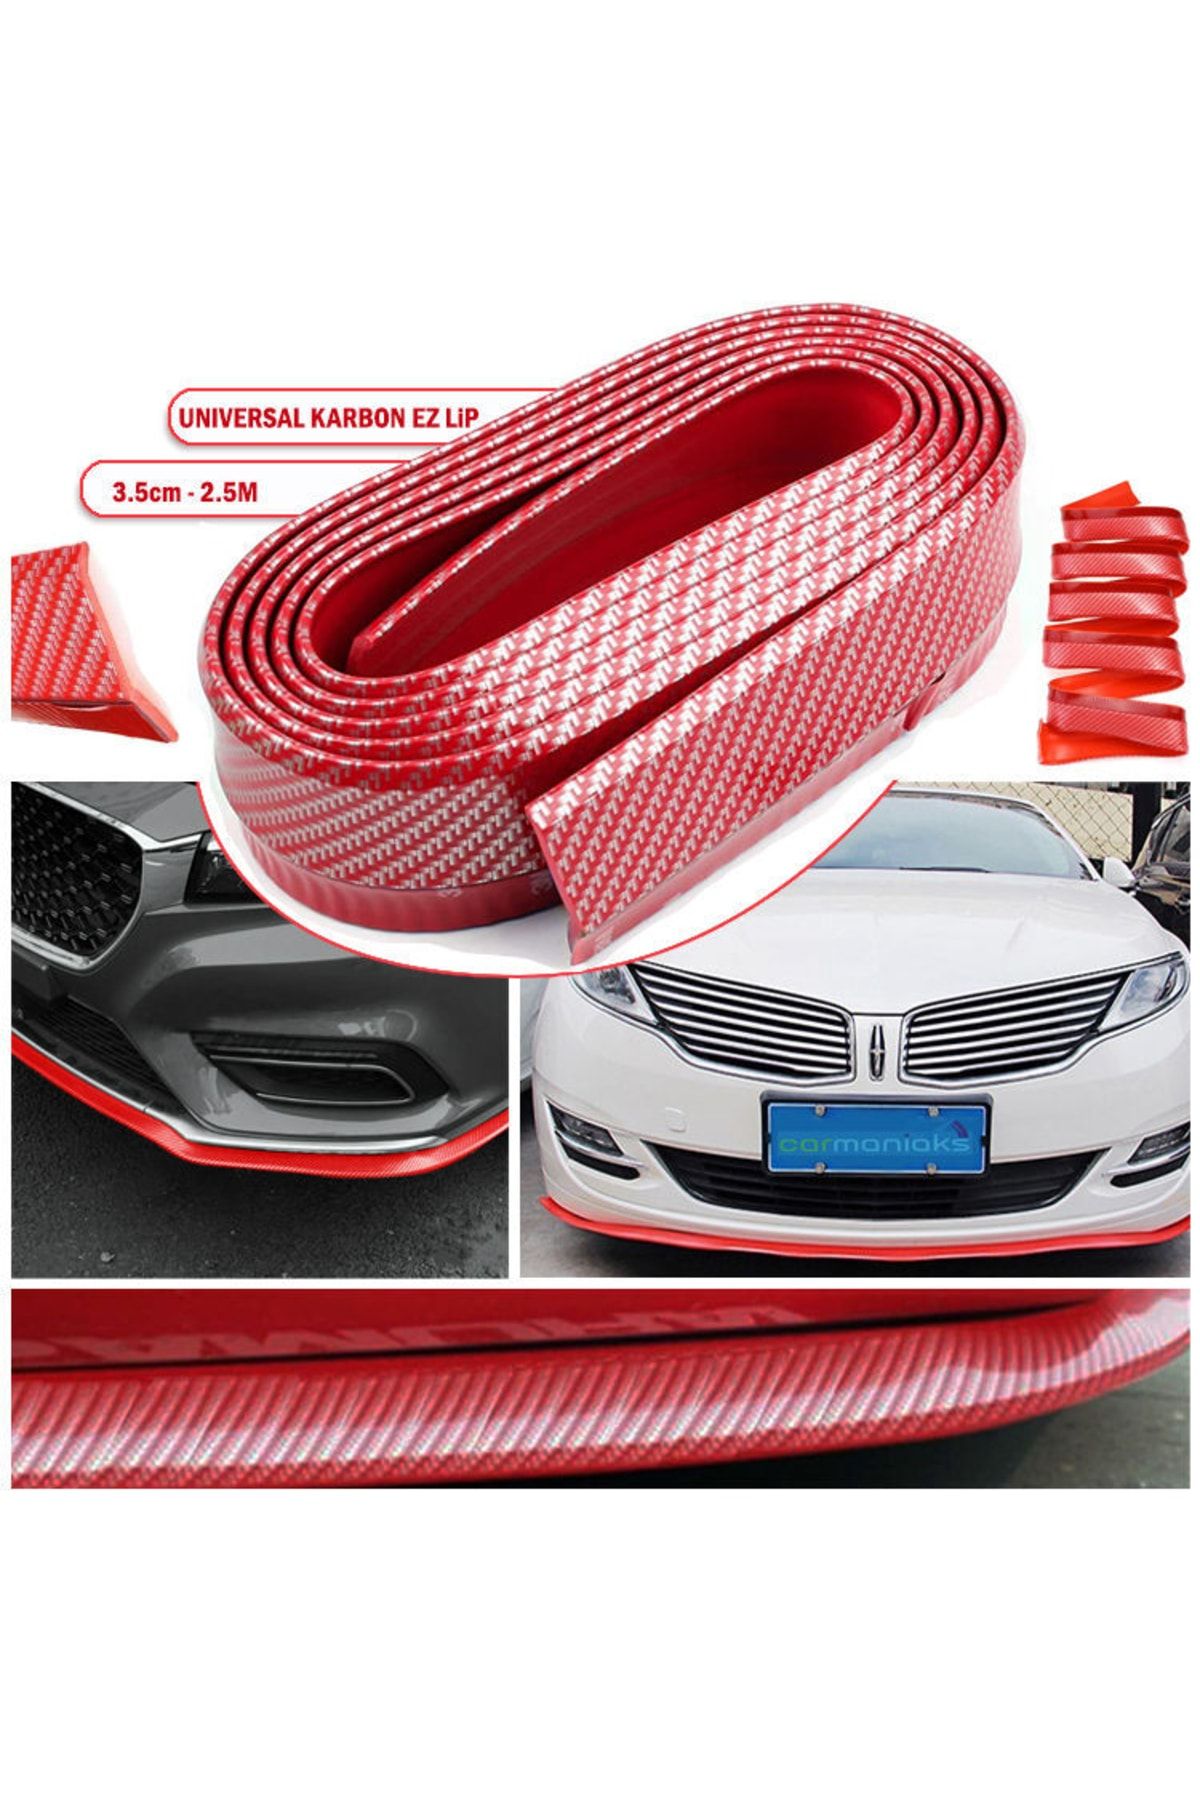 AnkaShop Oto Araba Araç Ön Lip Tampon Eki 2,5 Metre Ön Tampon Koruyucu Universal Esnek Şerit Karbon Kırmızı